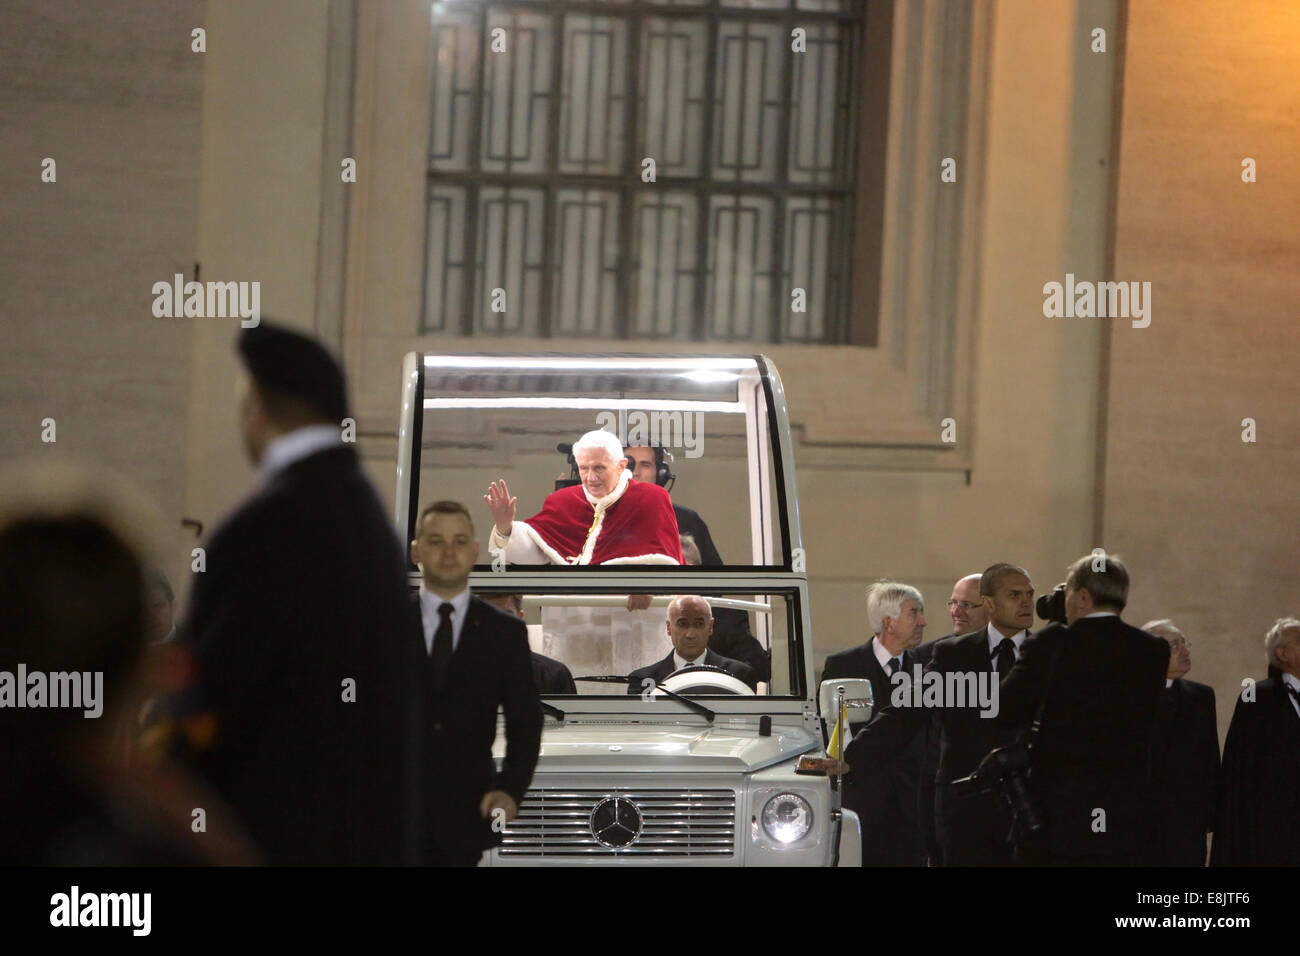 Le pape Benoît XVI l'arrivée dans sa voiture papale pour une réunion avec des membres de la communauté de Taizé à St Peter's Square. Banque D'Images